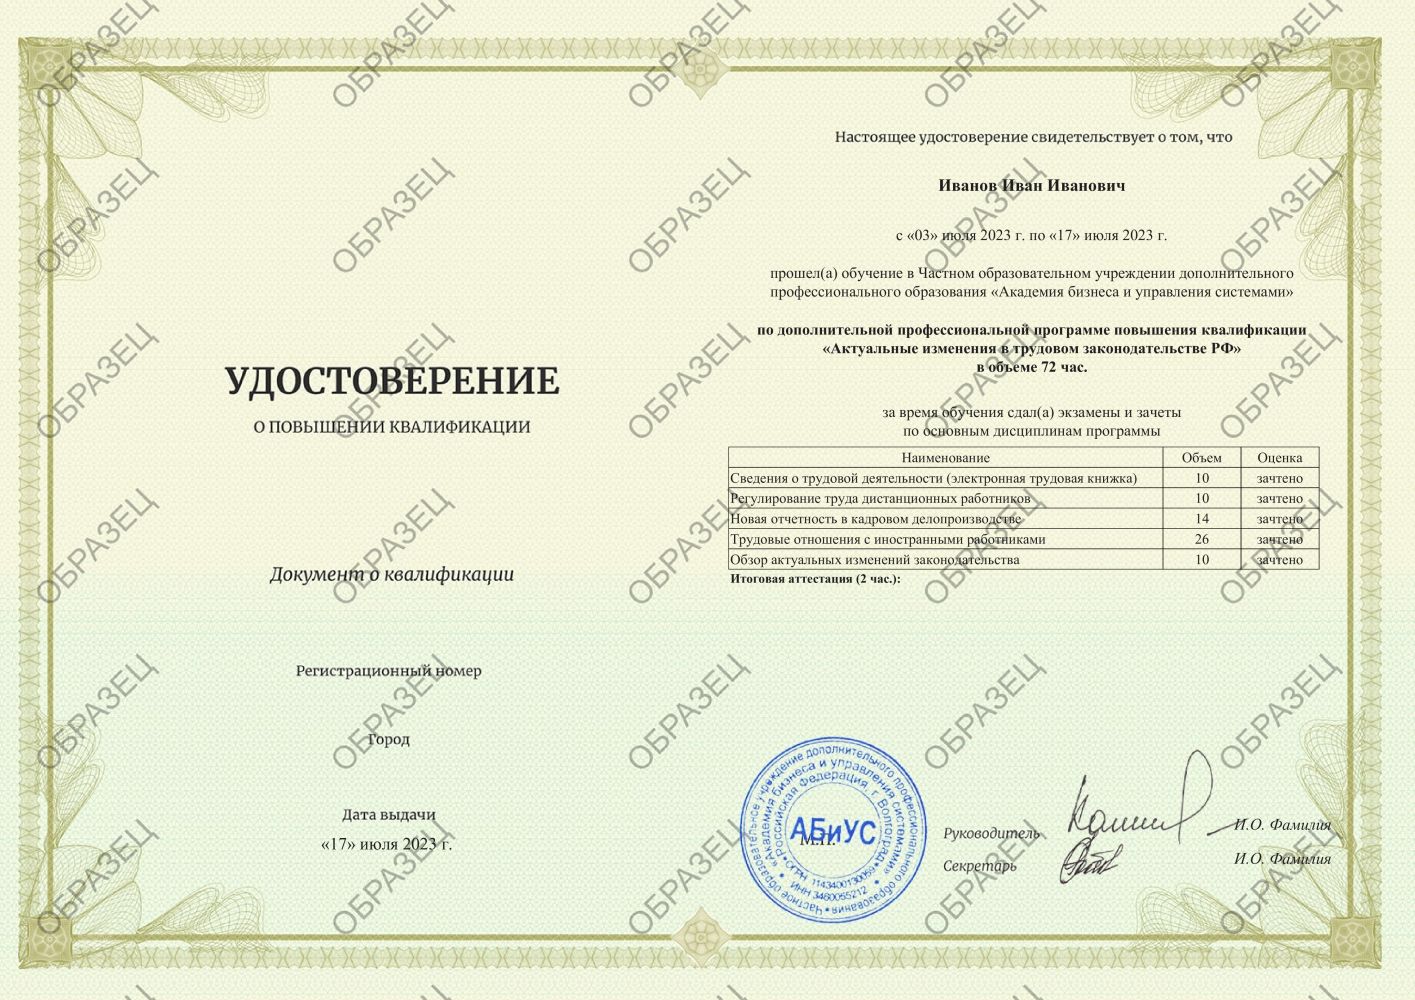 Удостоверение Актуальные изменения в трудовом законодательстве РФ 72 часа 7125 руб.